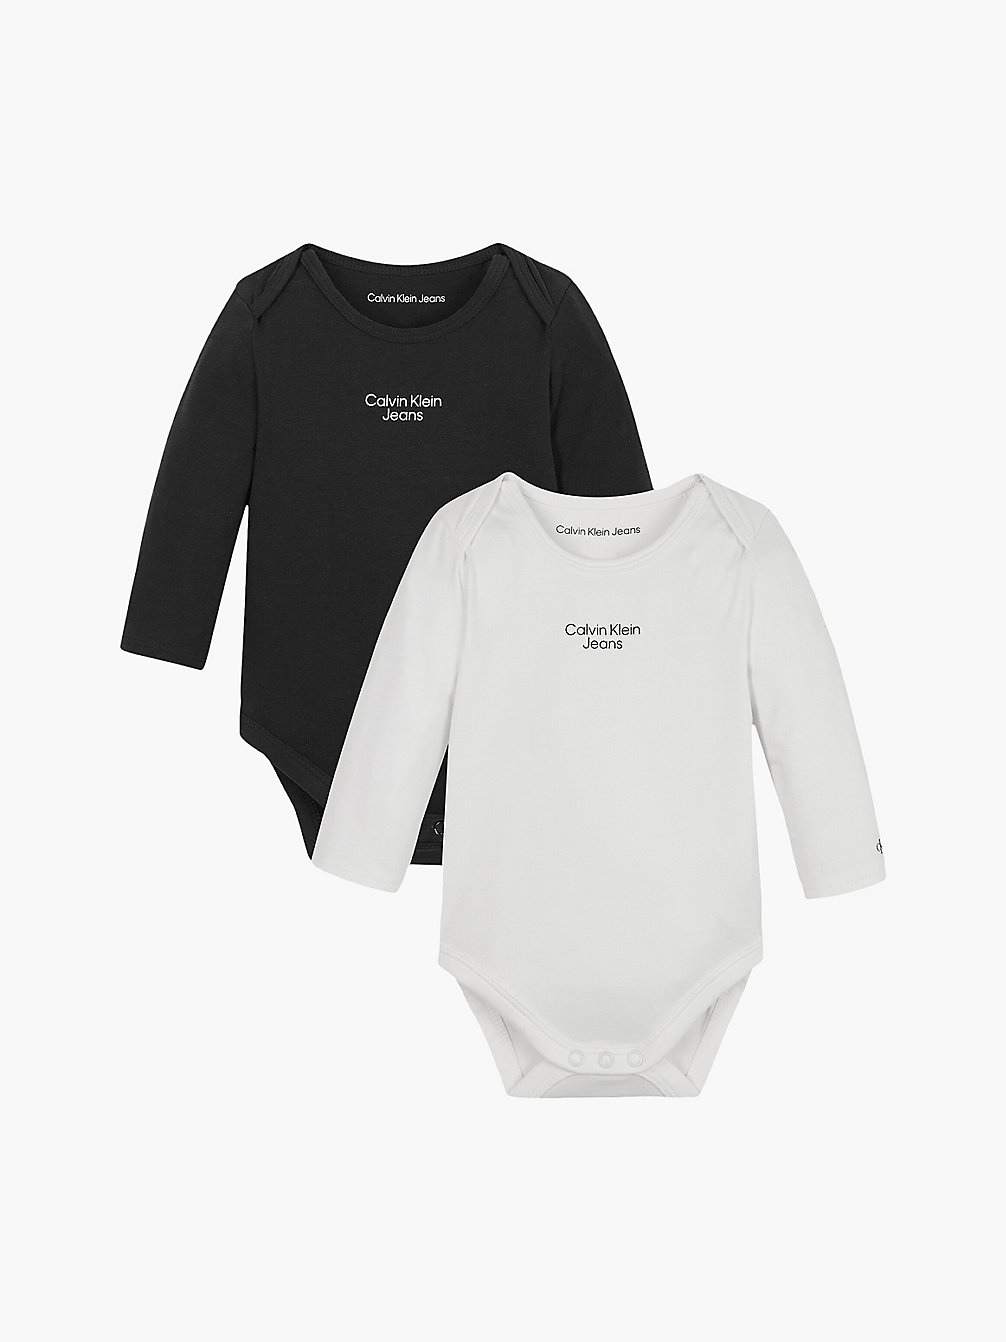 BLACK/BRIGHT WHITE 2-Pack Newborn Bodysuit undefined newborn Calvin Klein